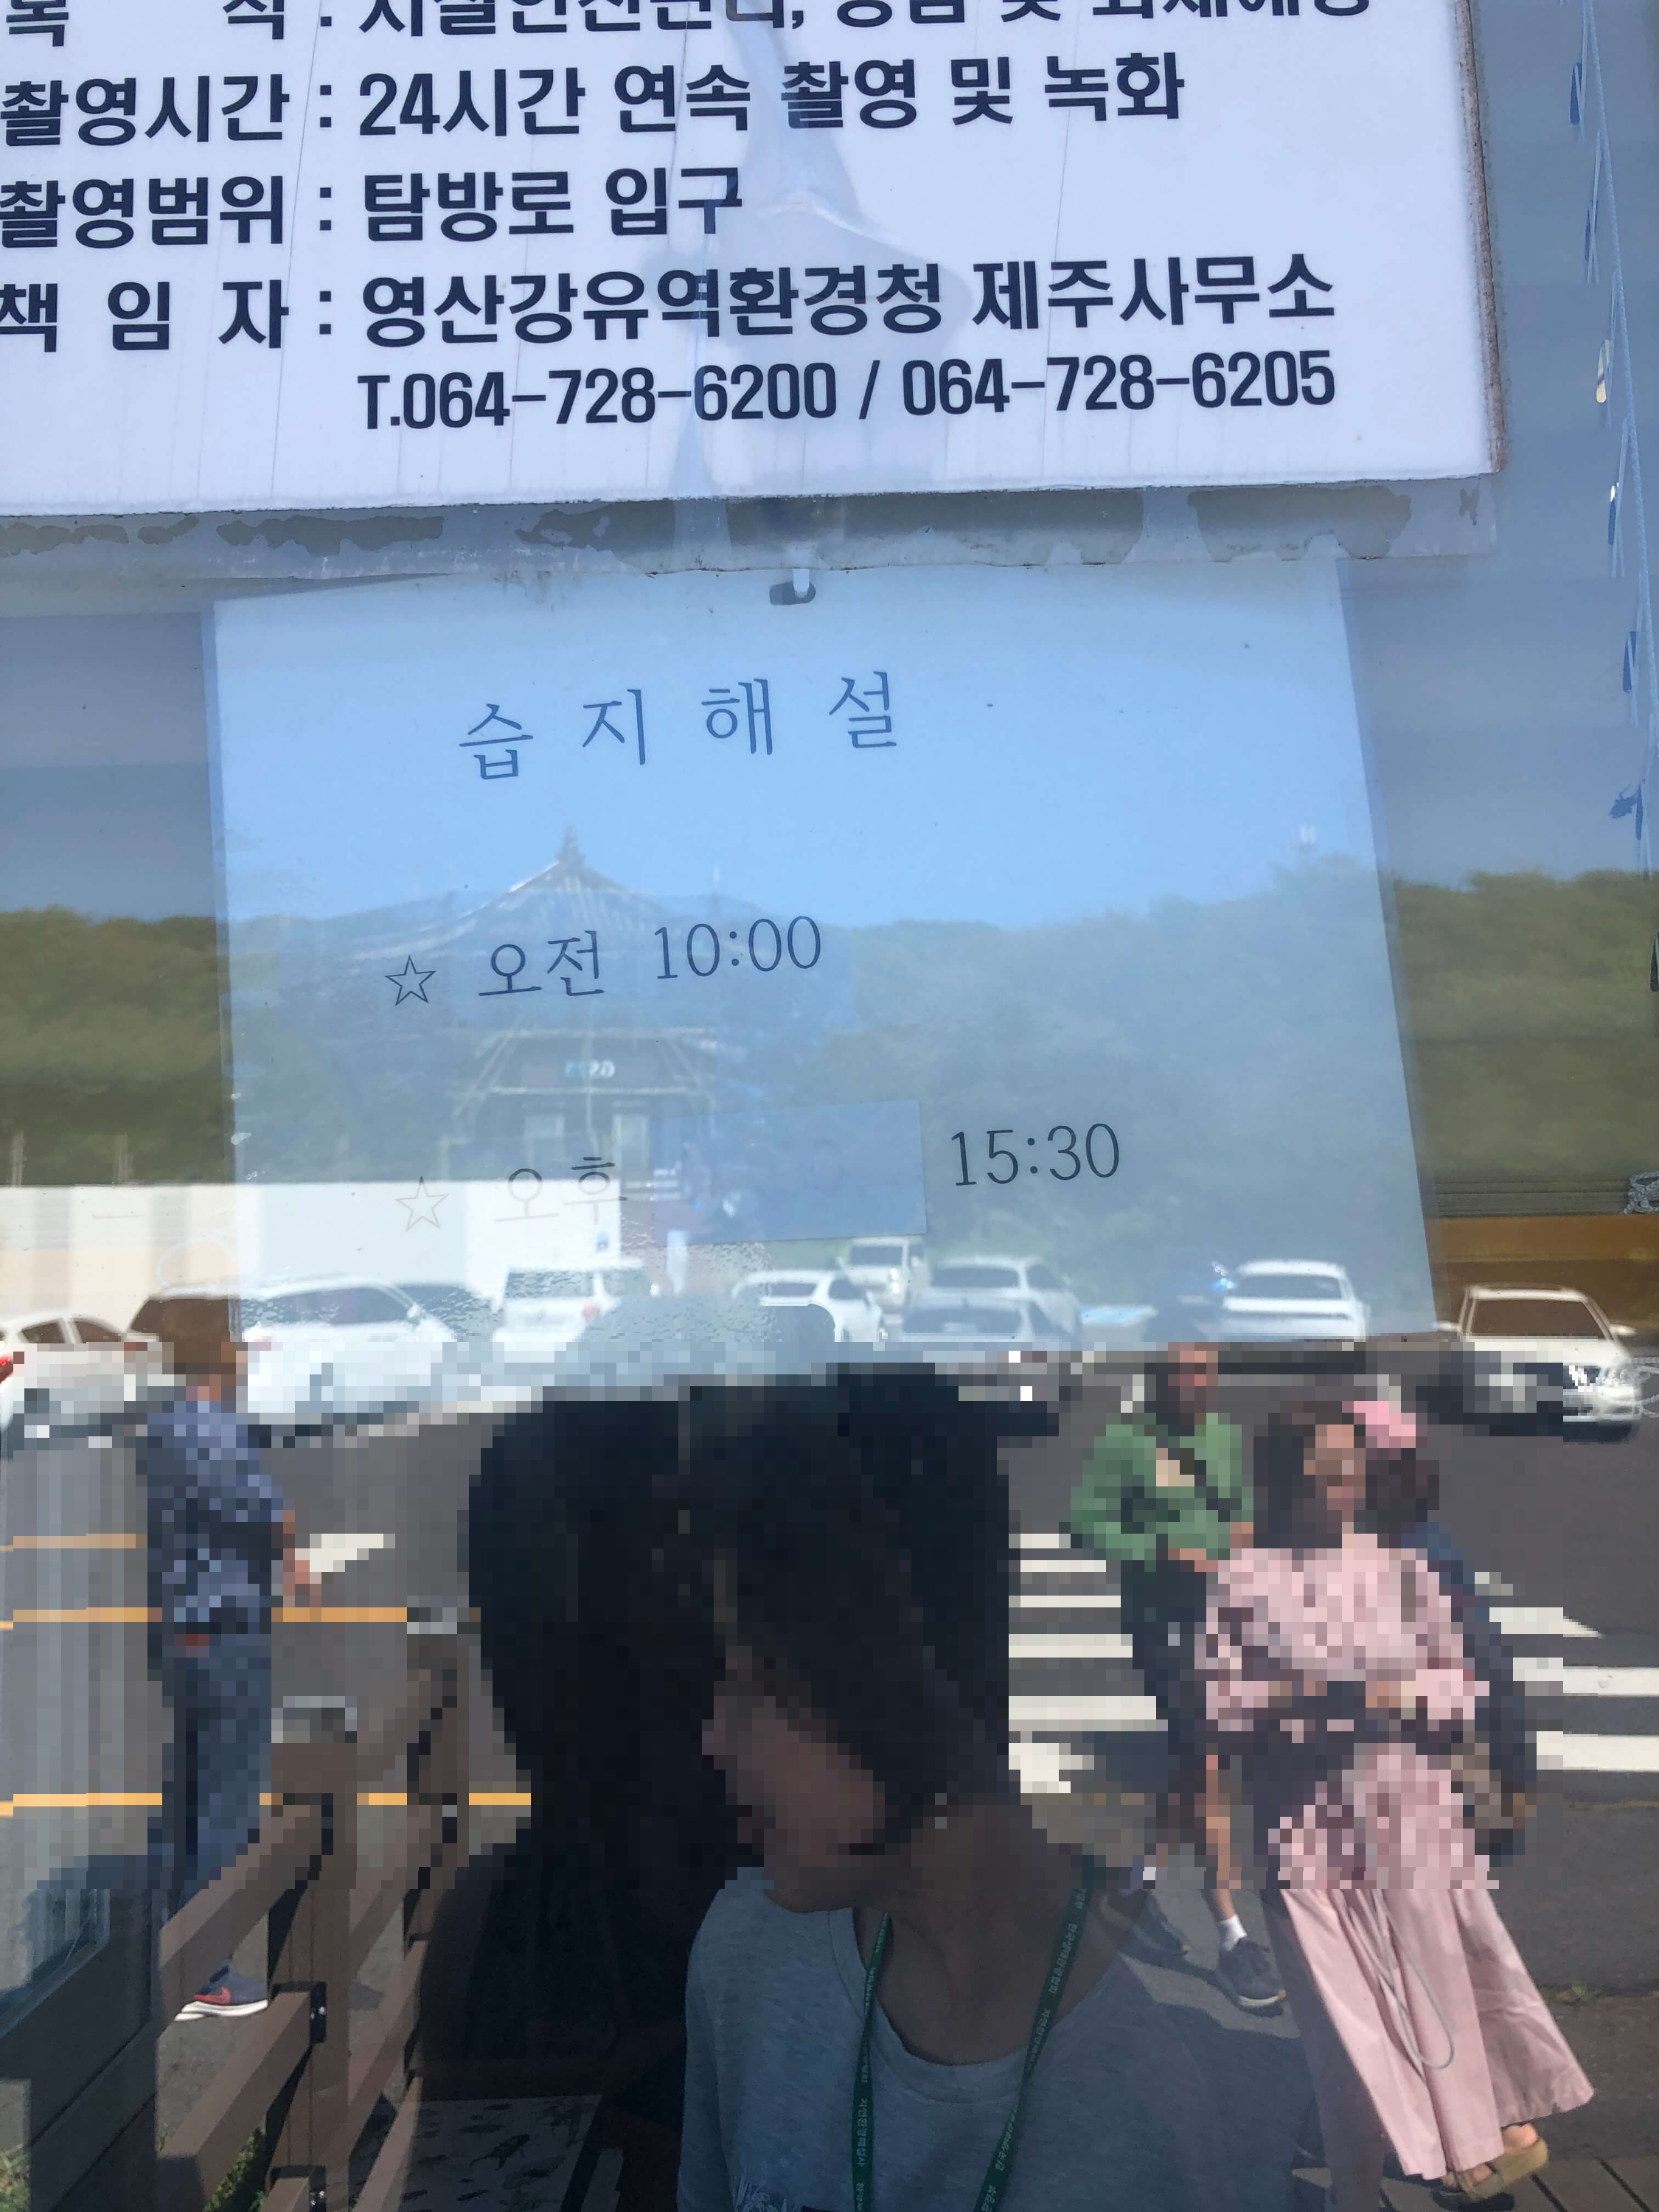 민수랜드-제주한라산1100고지습지 해설시간